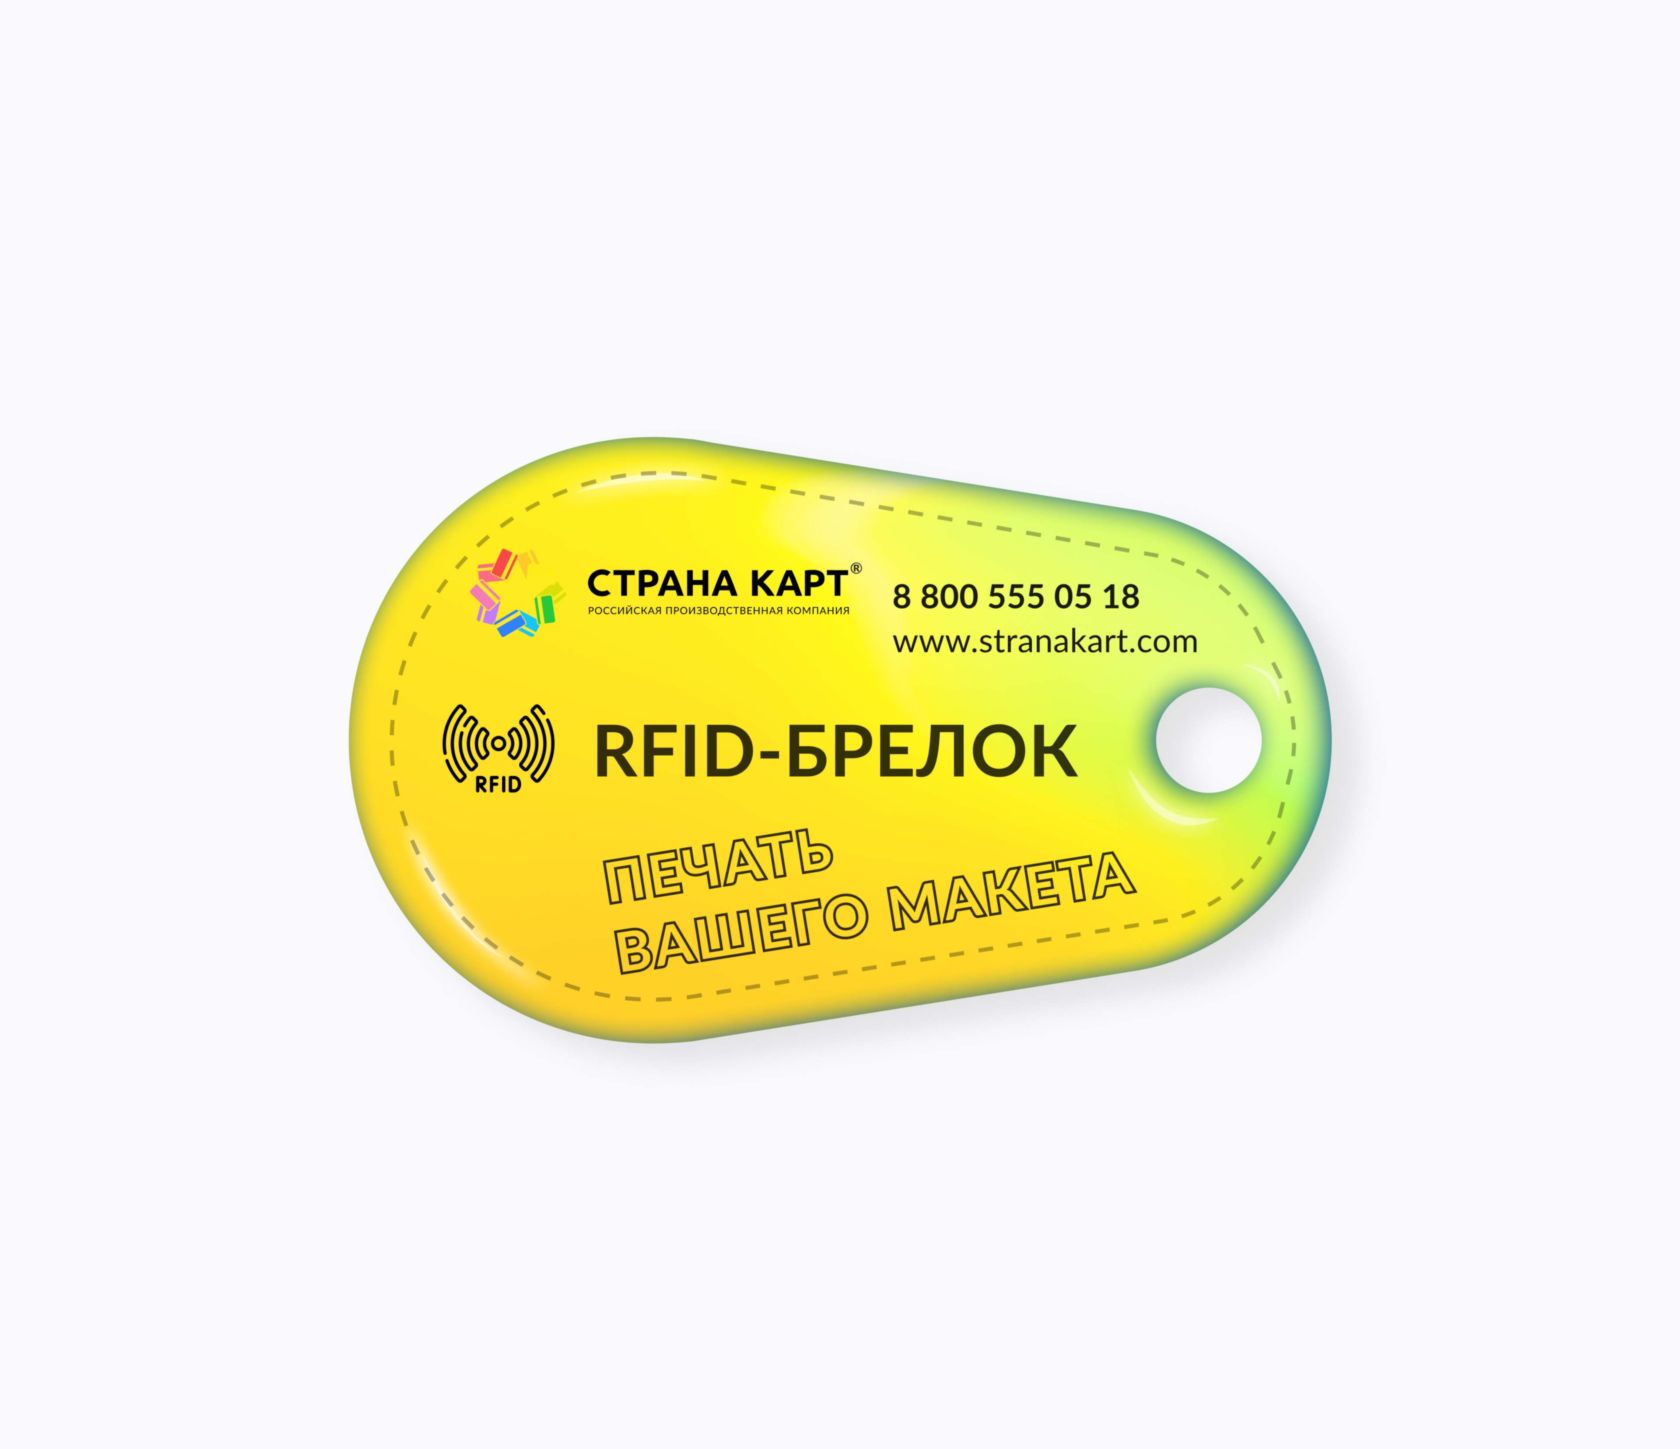 Каплевидные RFID-брелоки NEOKEY® с чипом skipass для горнолыжных курортов RFID-брелоки NEOKEY® с чипом skipass для горнолыжных курортов